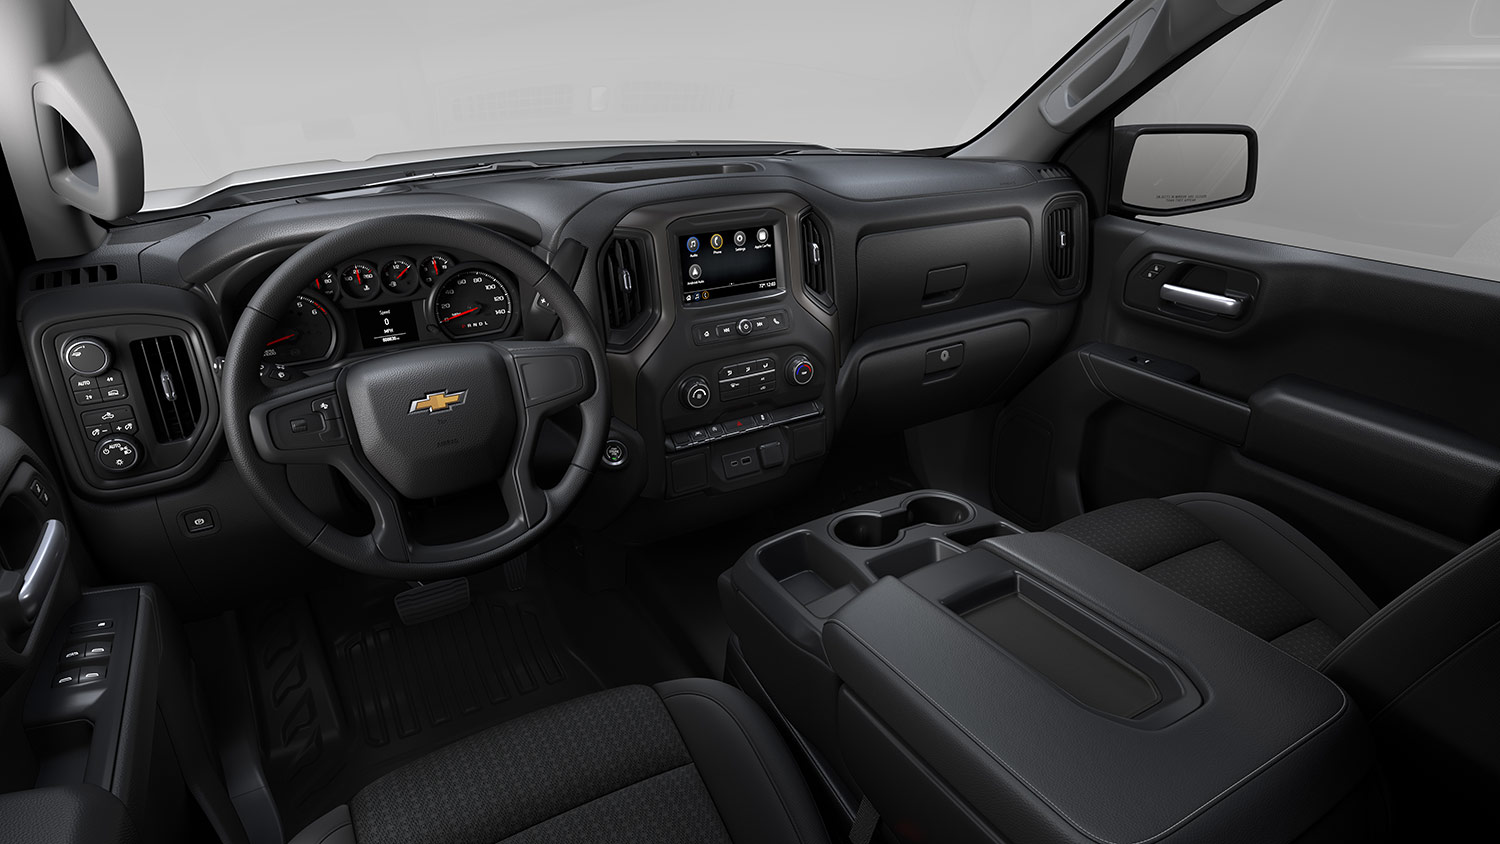 Chevrolet Silverado Turbo 2022 en México interiores cómodos con pantalla touch